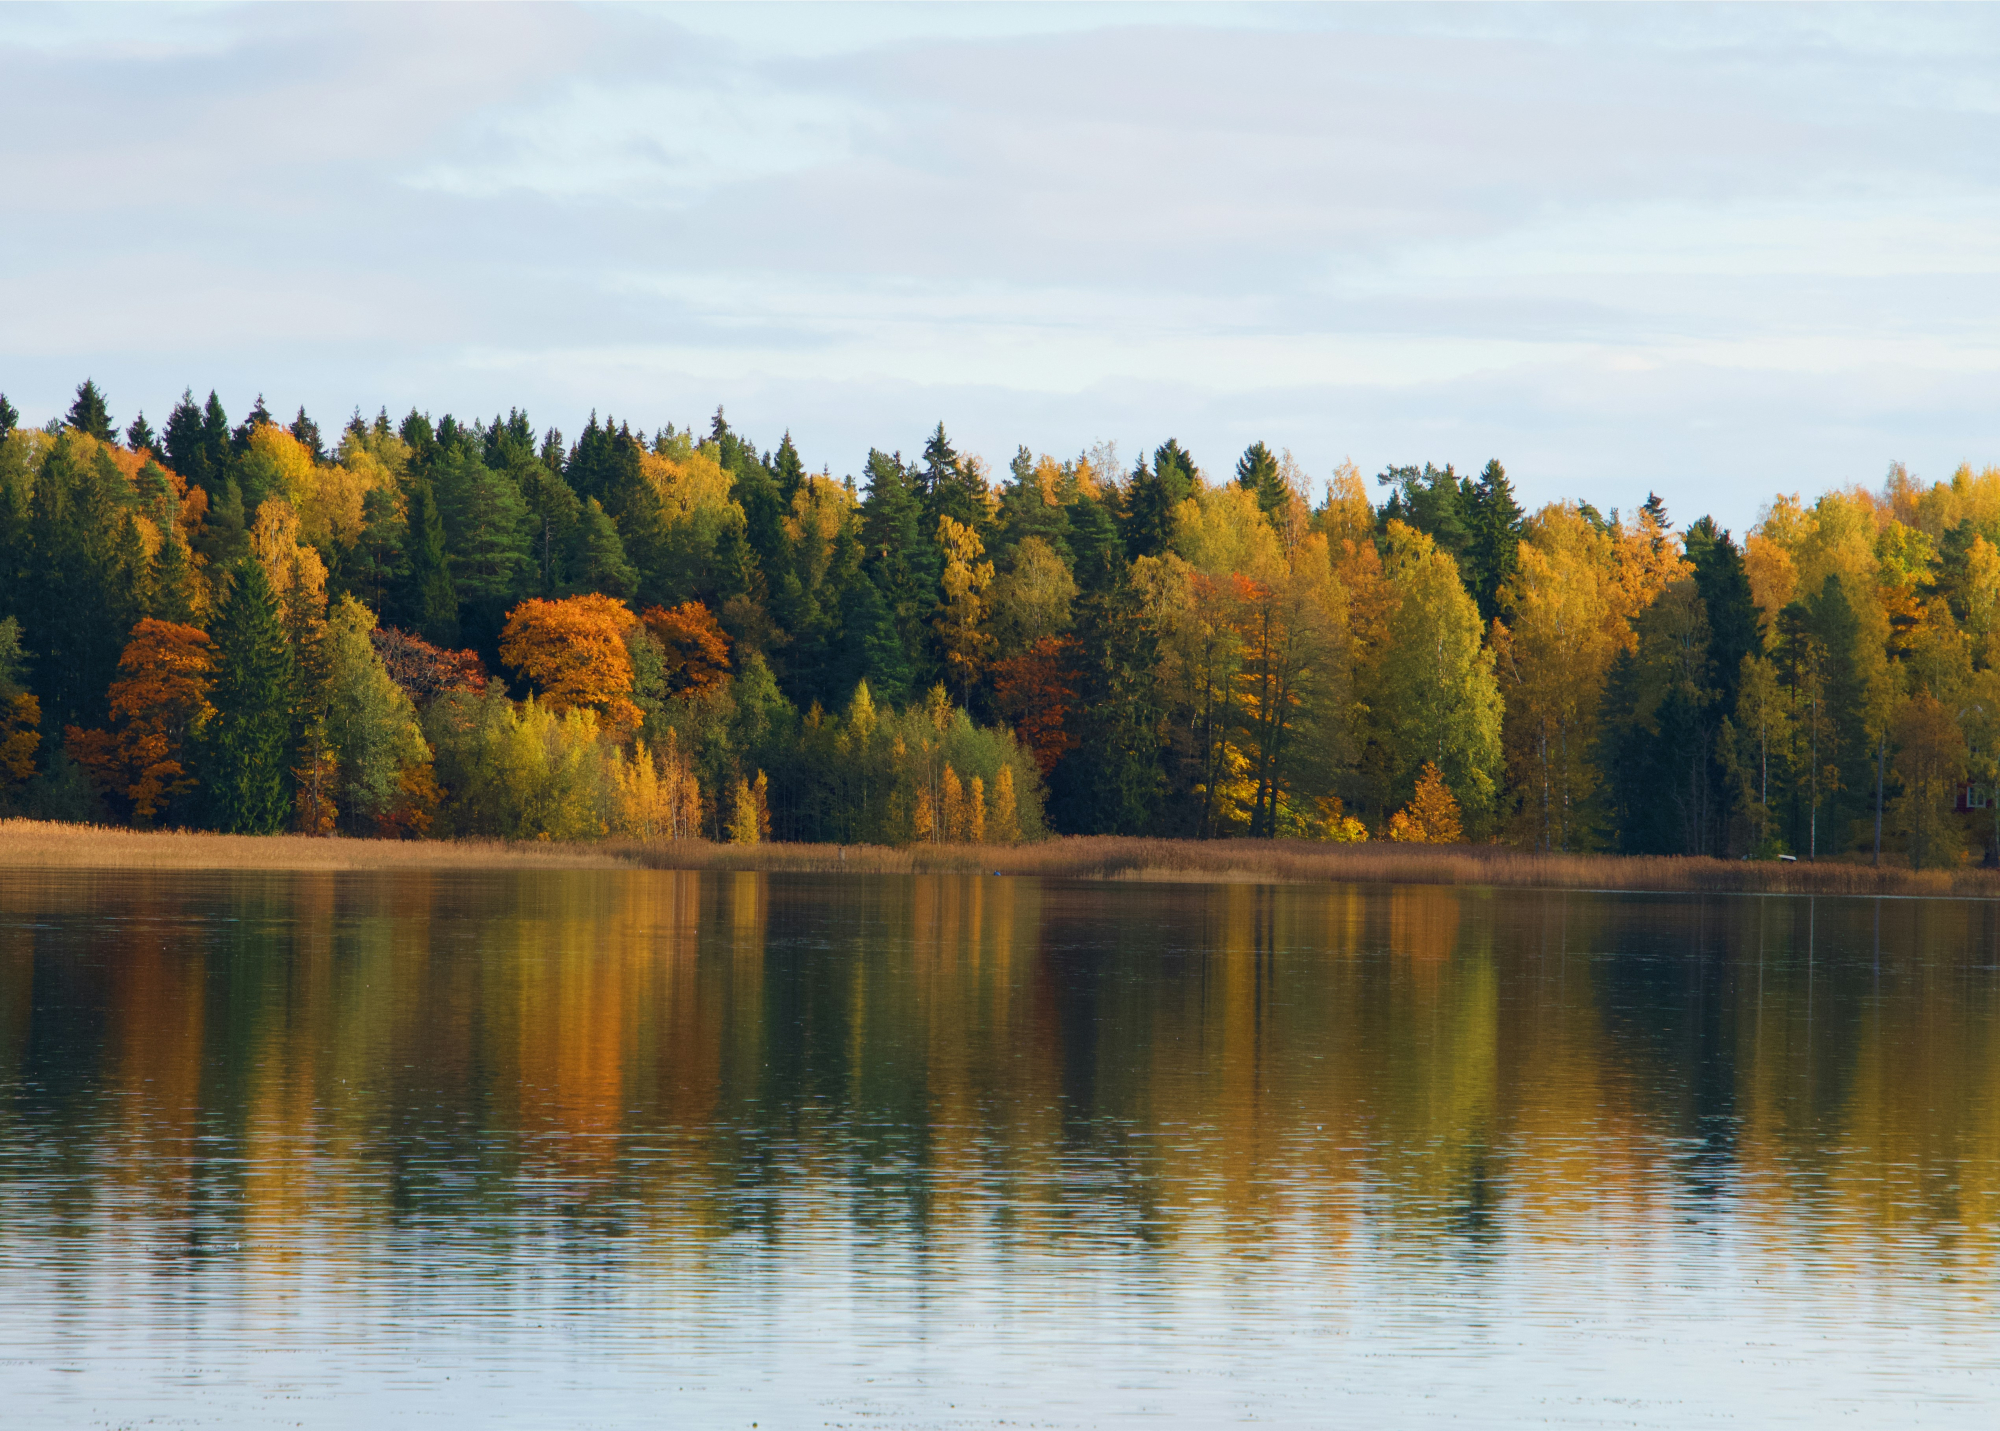 découvrez la finlande, pays scandinave réputé pour ses aurores boréales, ses vastes forêts et ses lacs cristallins.